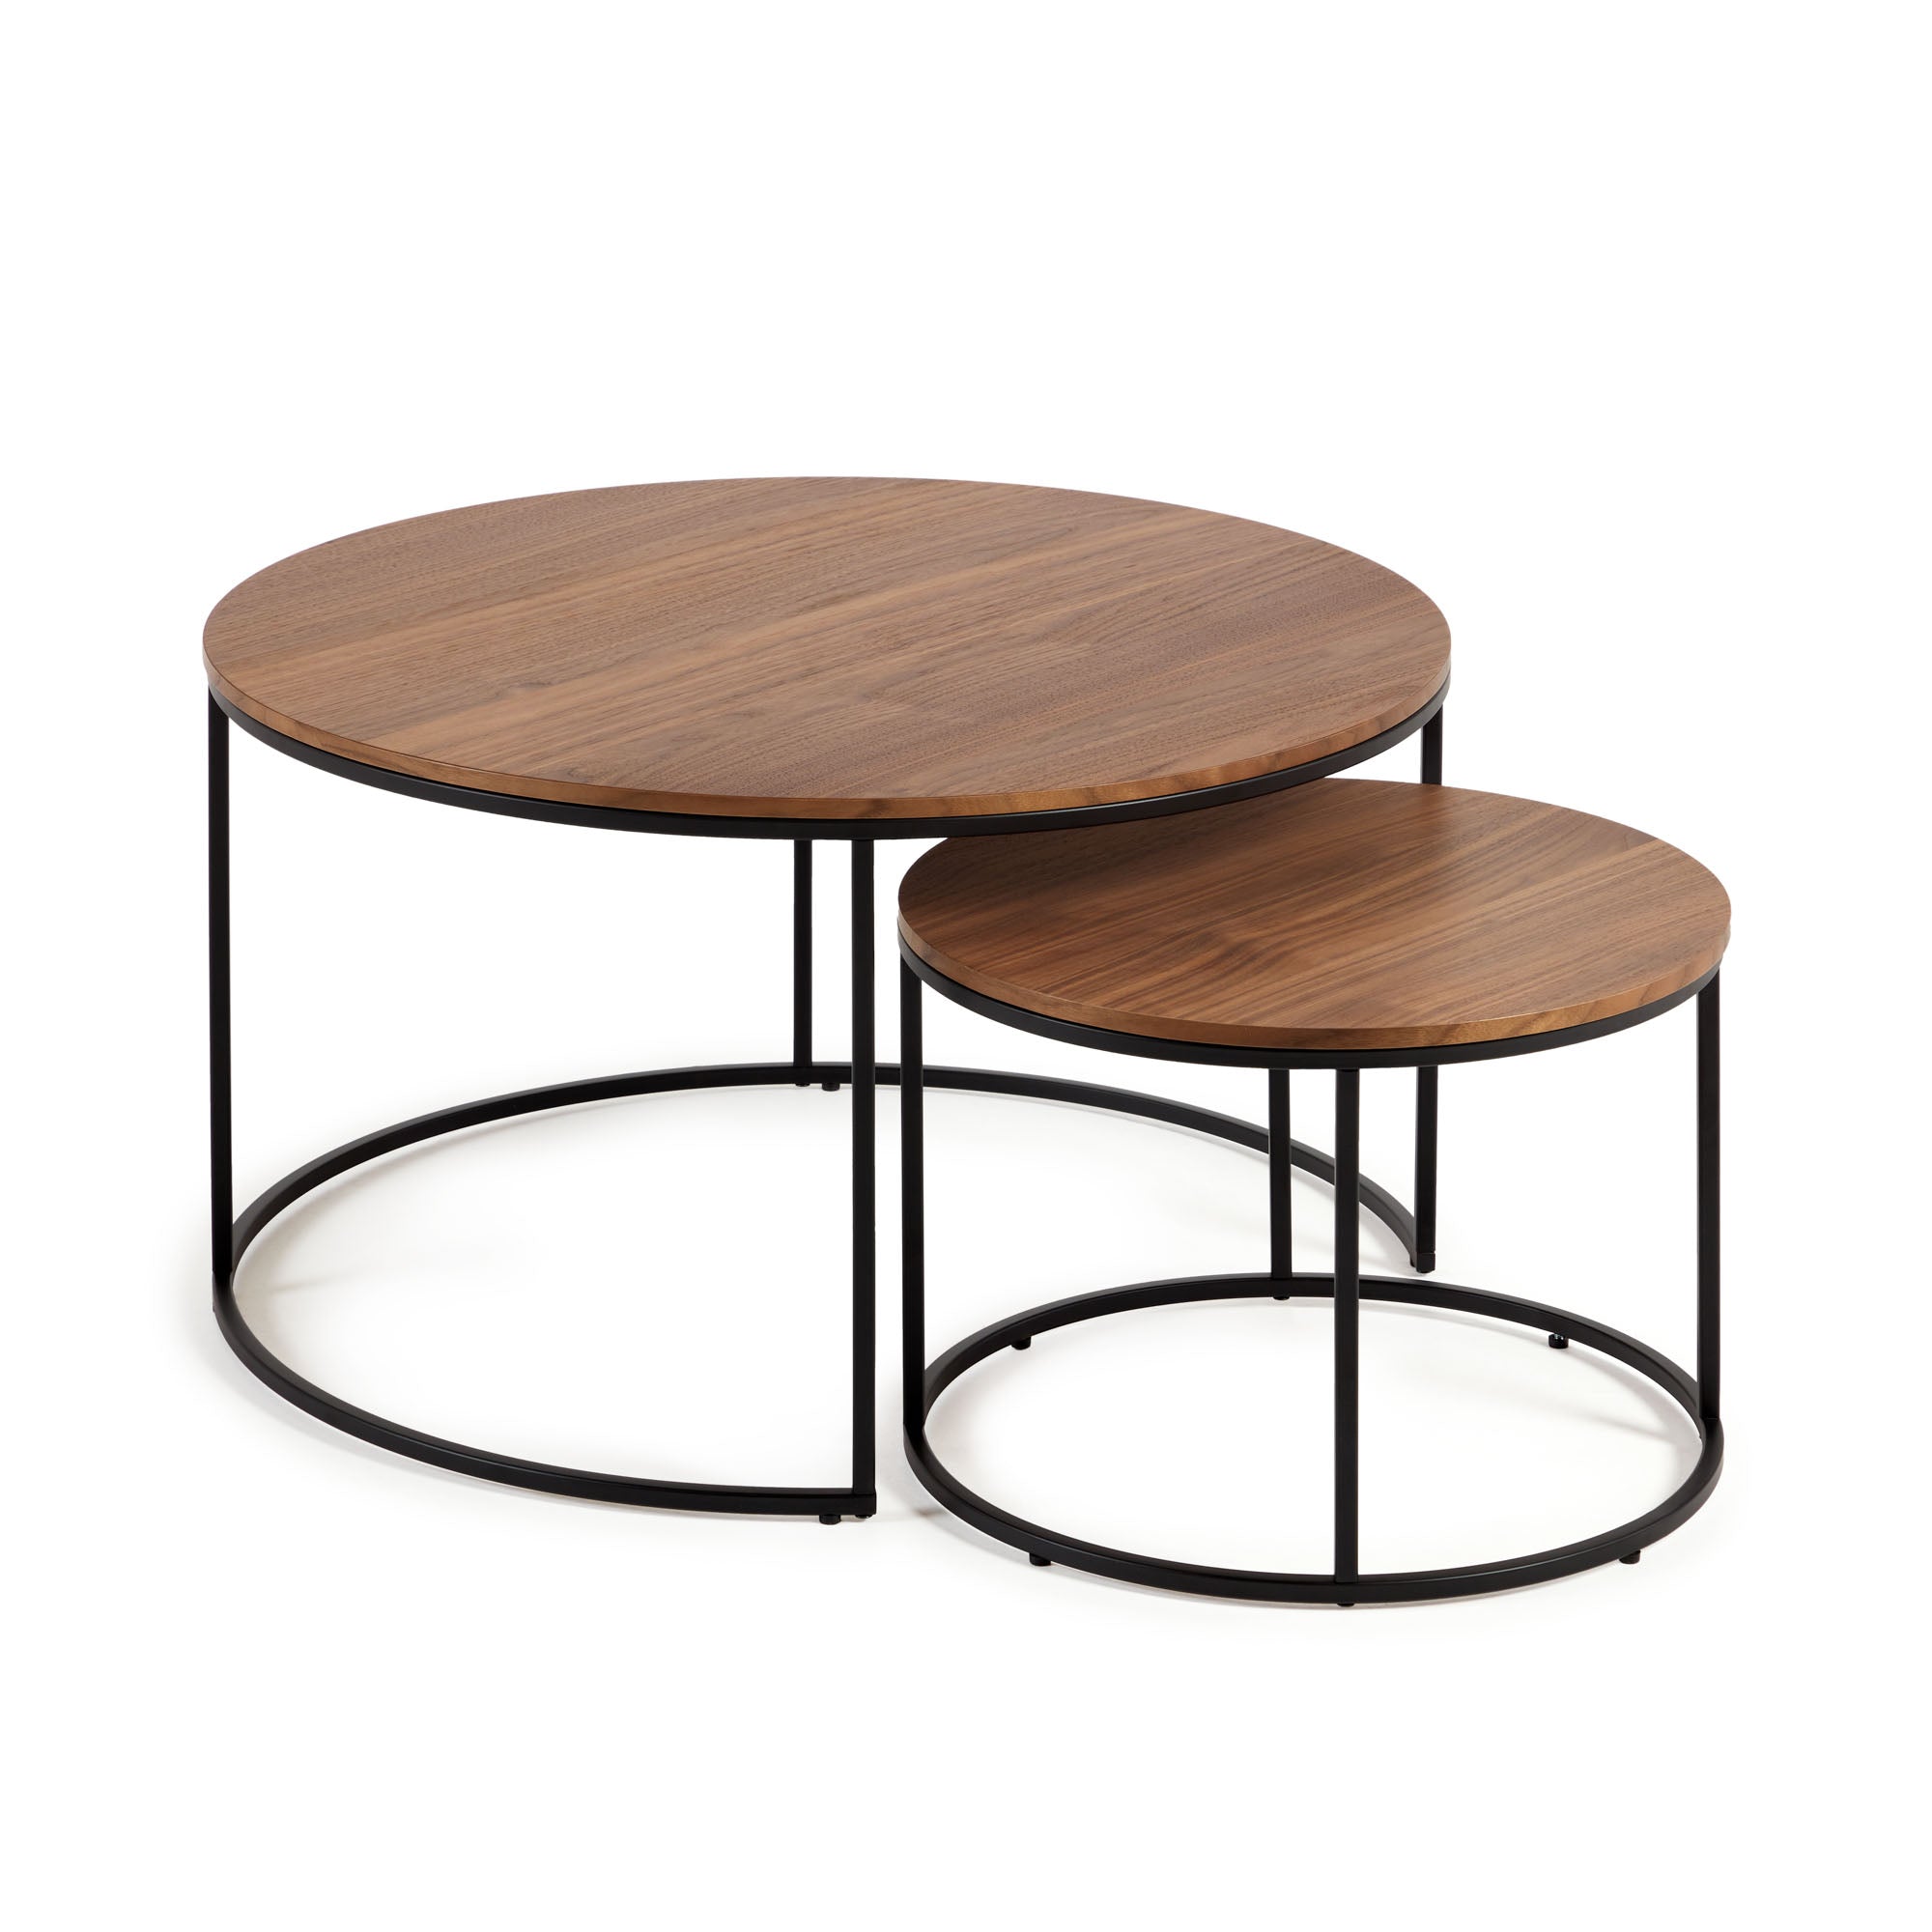 Yoana 2 db kisasztal, diófa furnérral és fekete fémmel, Ø 80 cm / Ø 50 cm